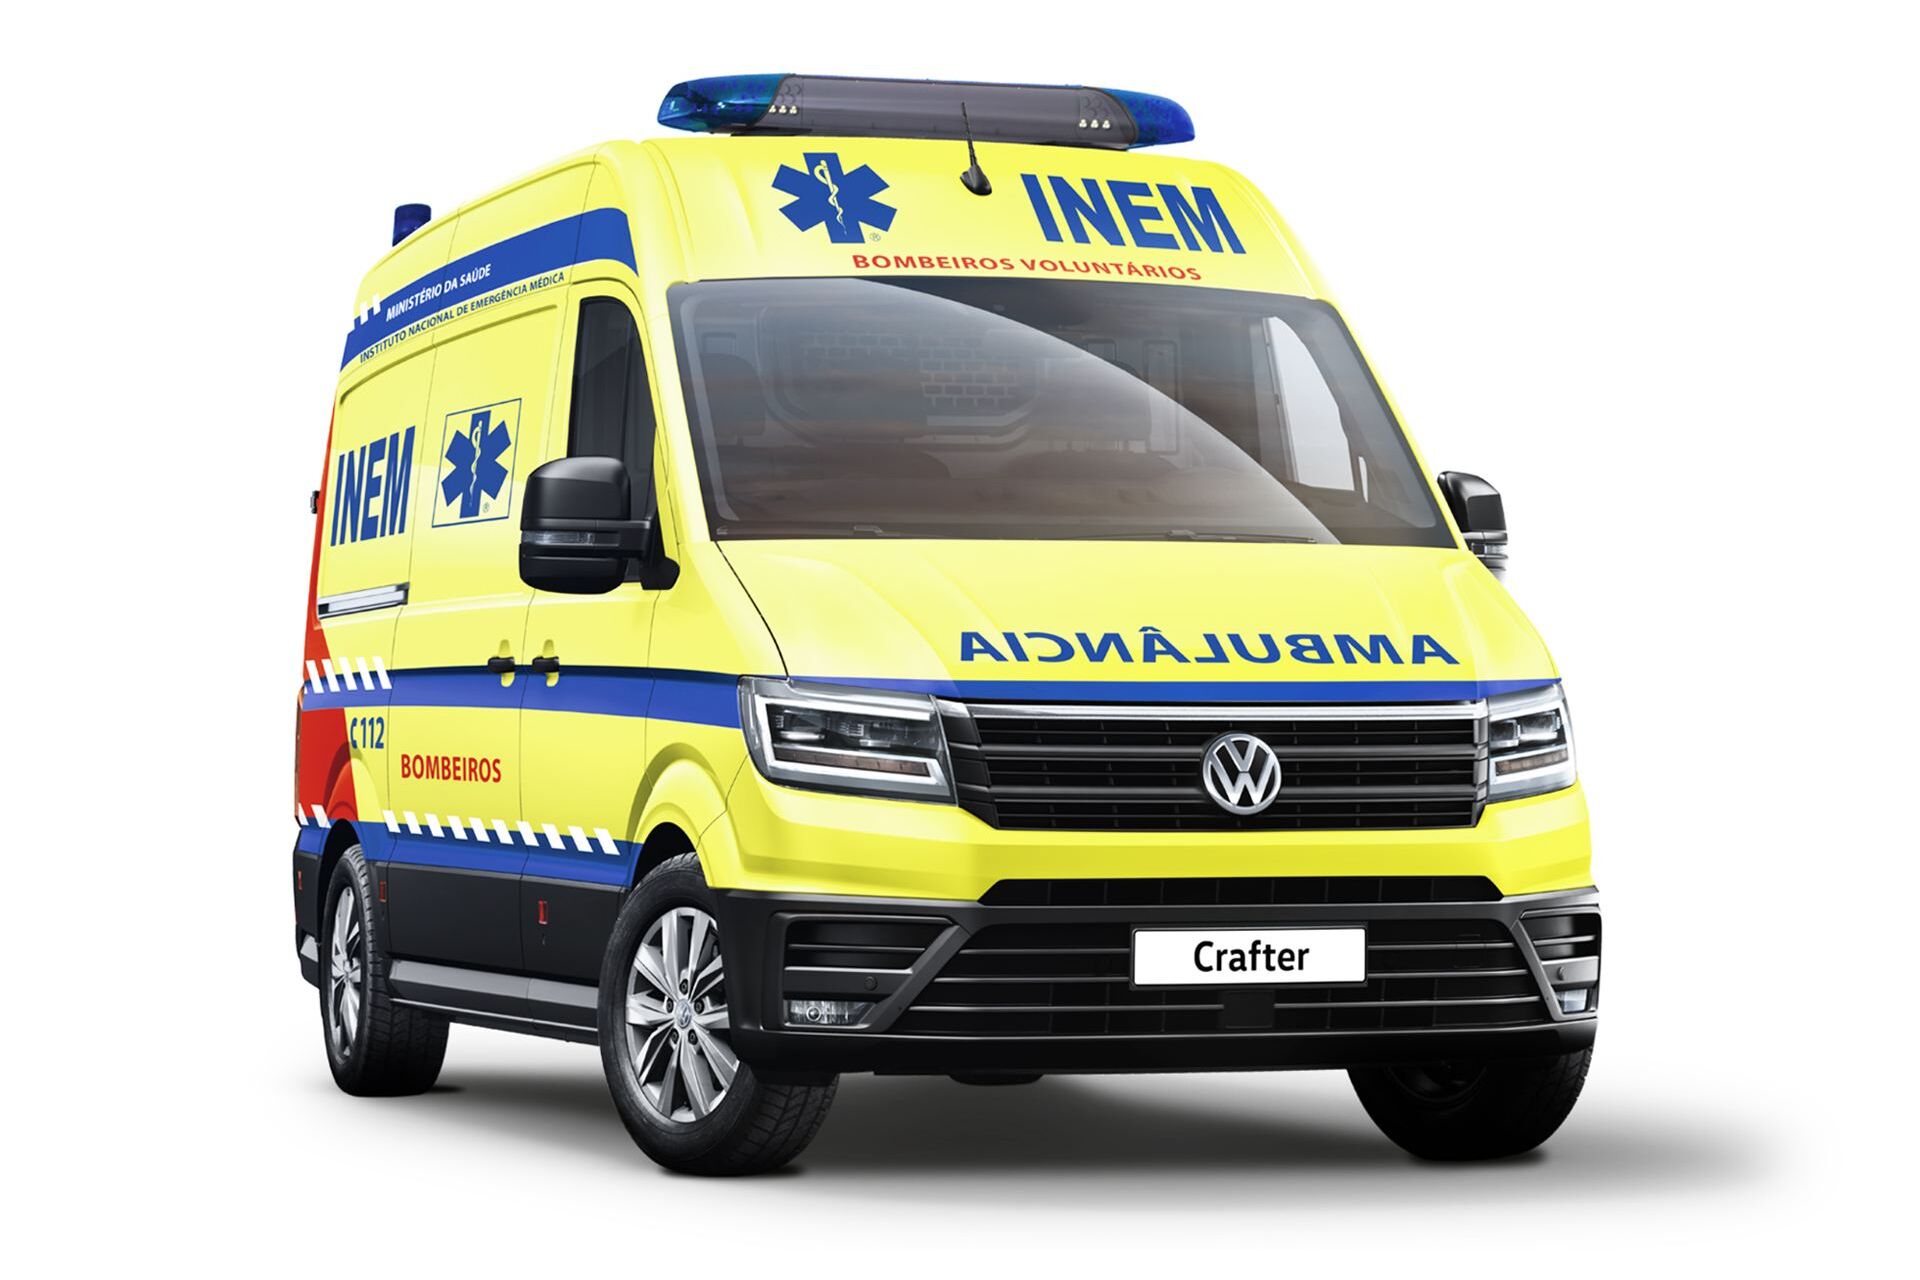 Carrinha comercial VW Crafter adaptada para Ambulância do INEM.